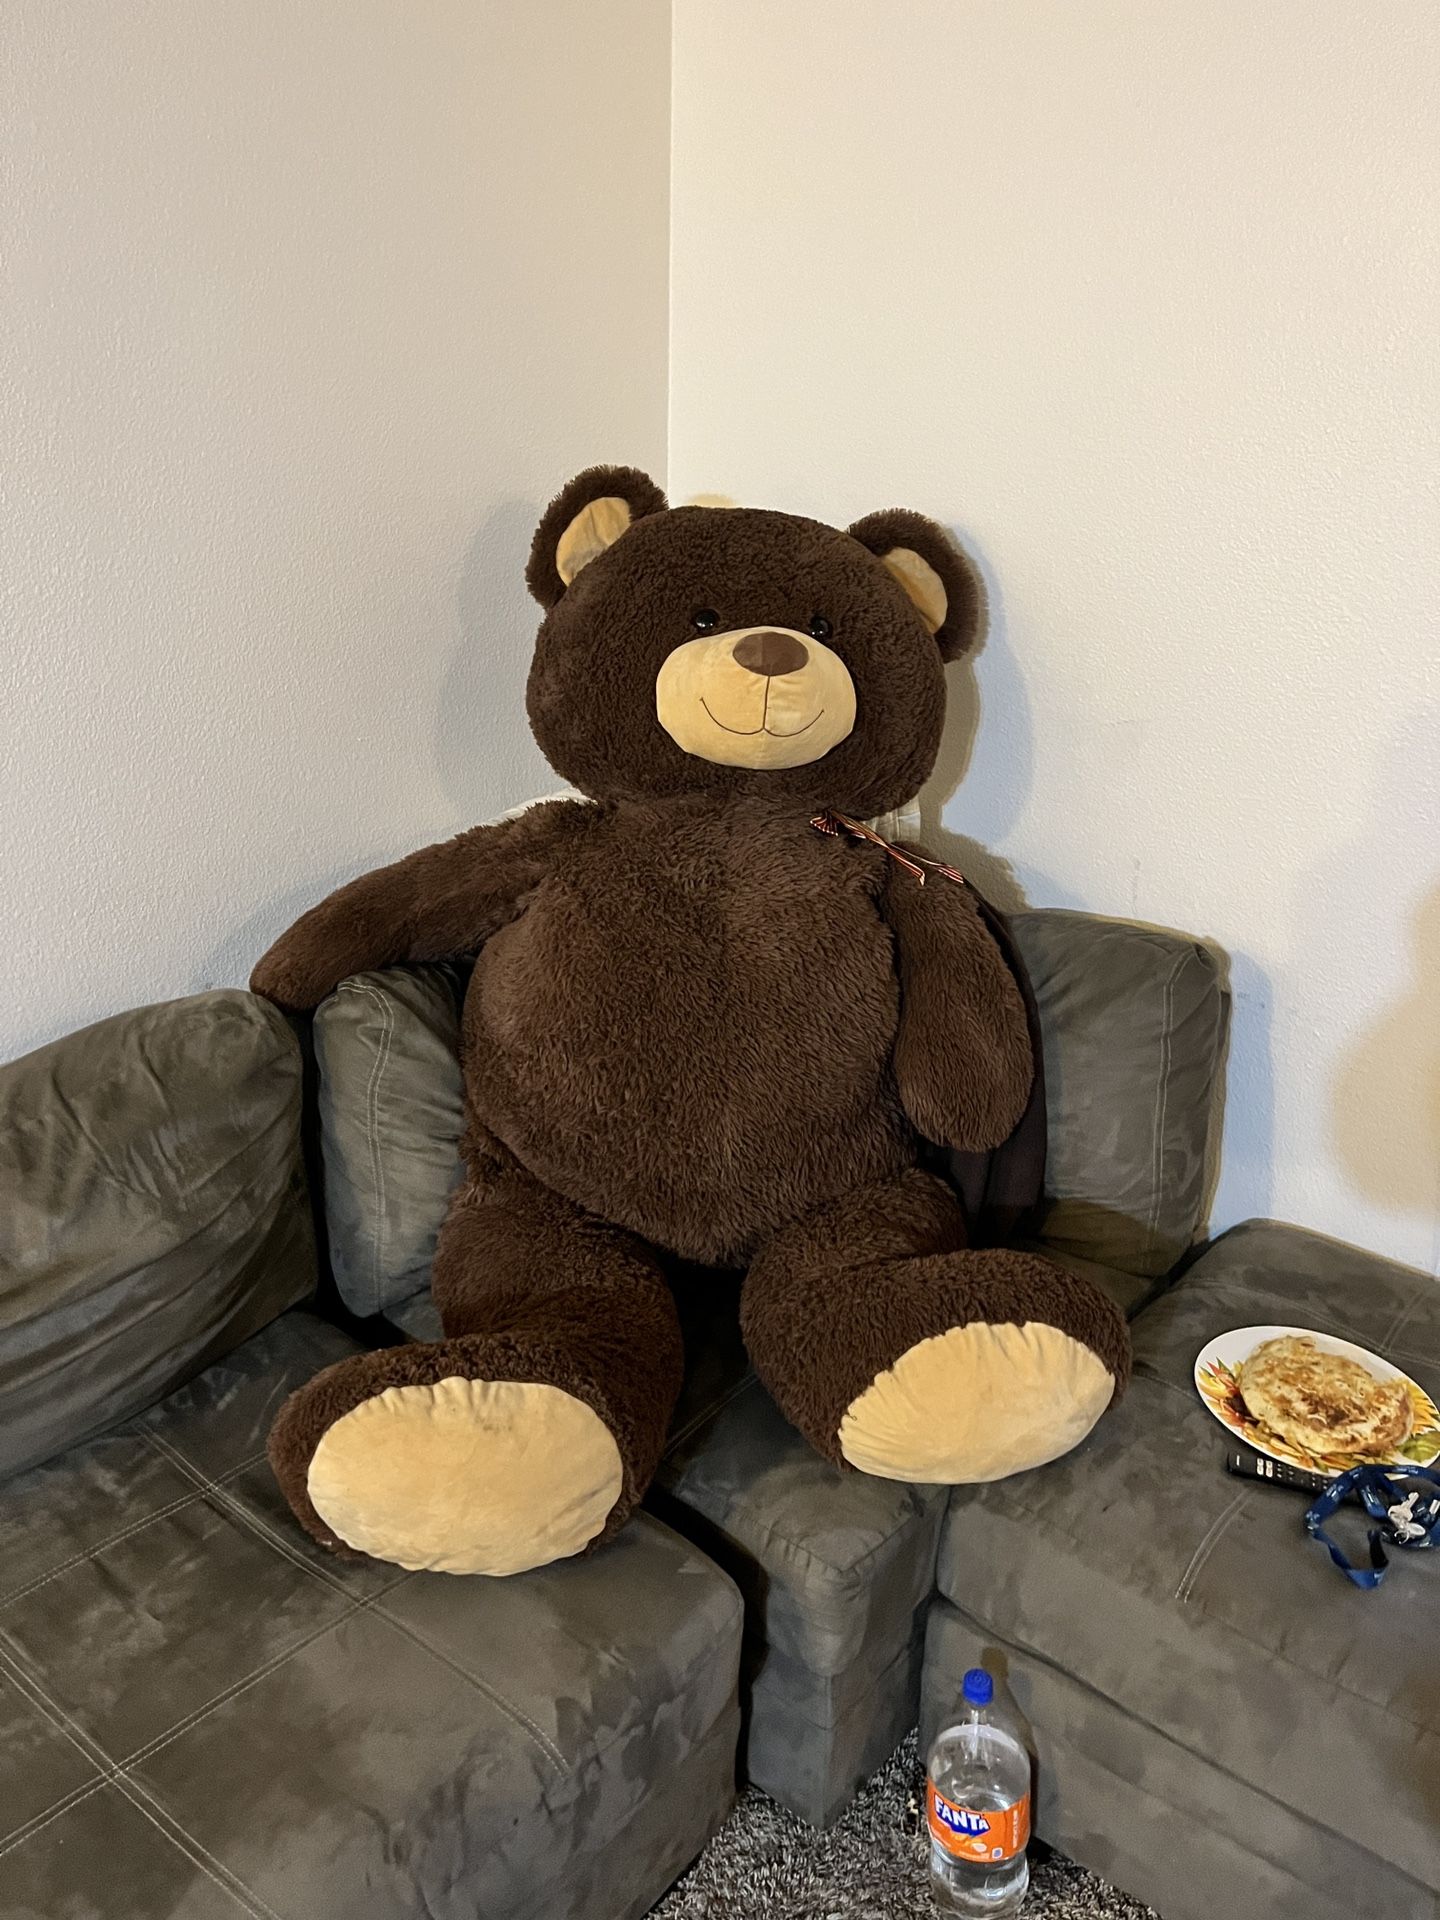 Da Bear from Teddy